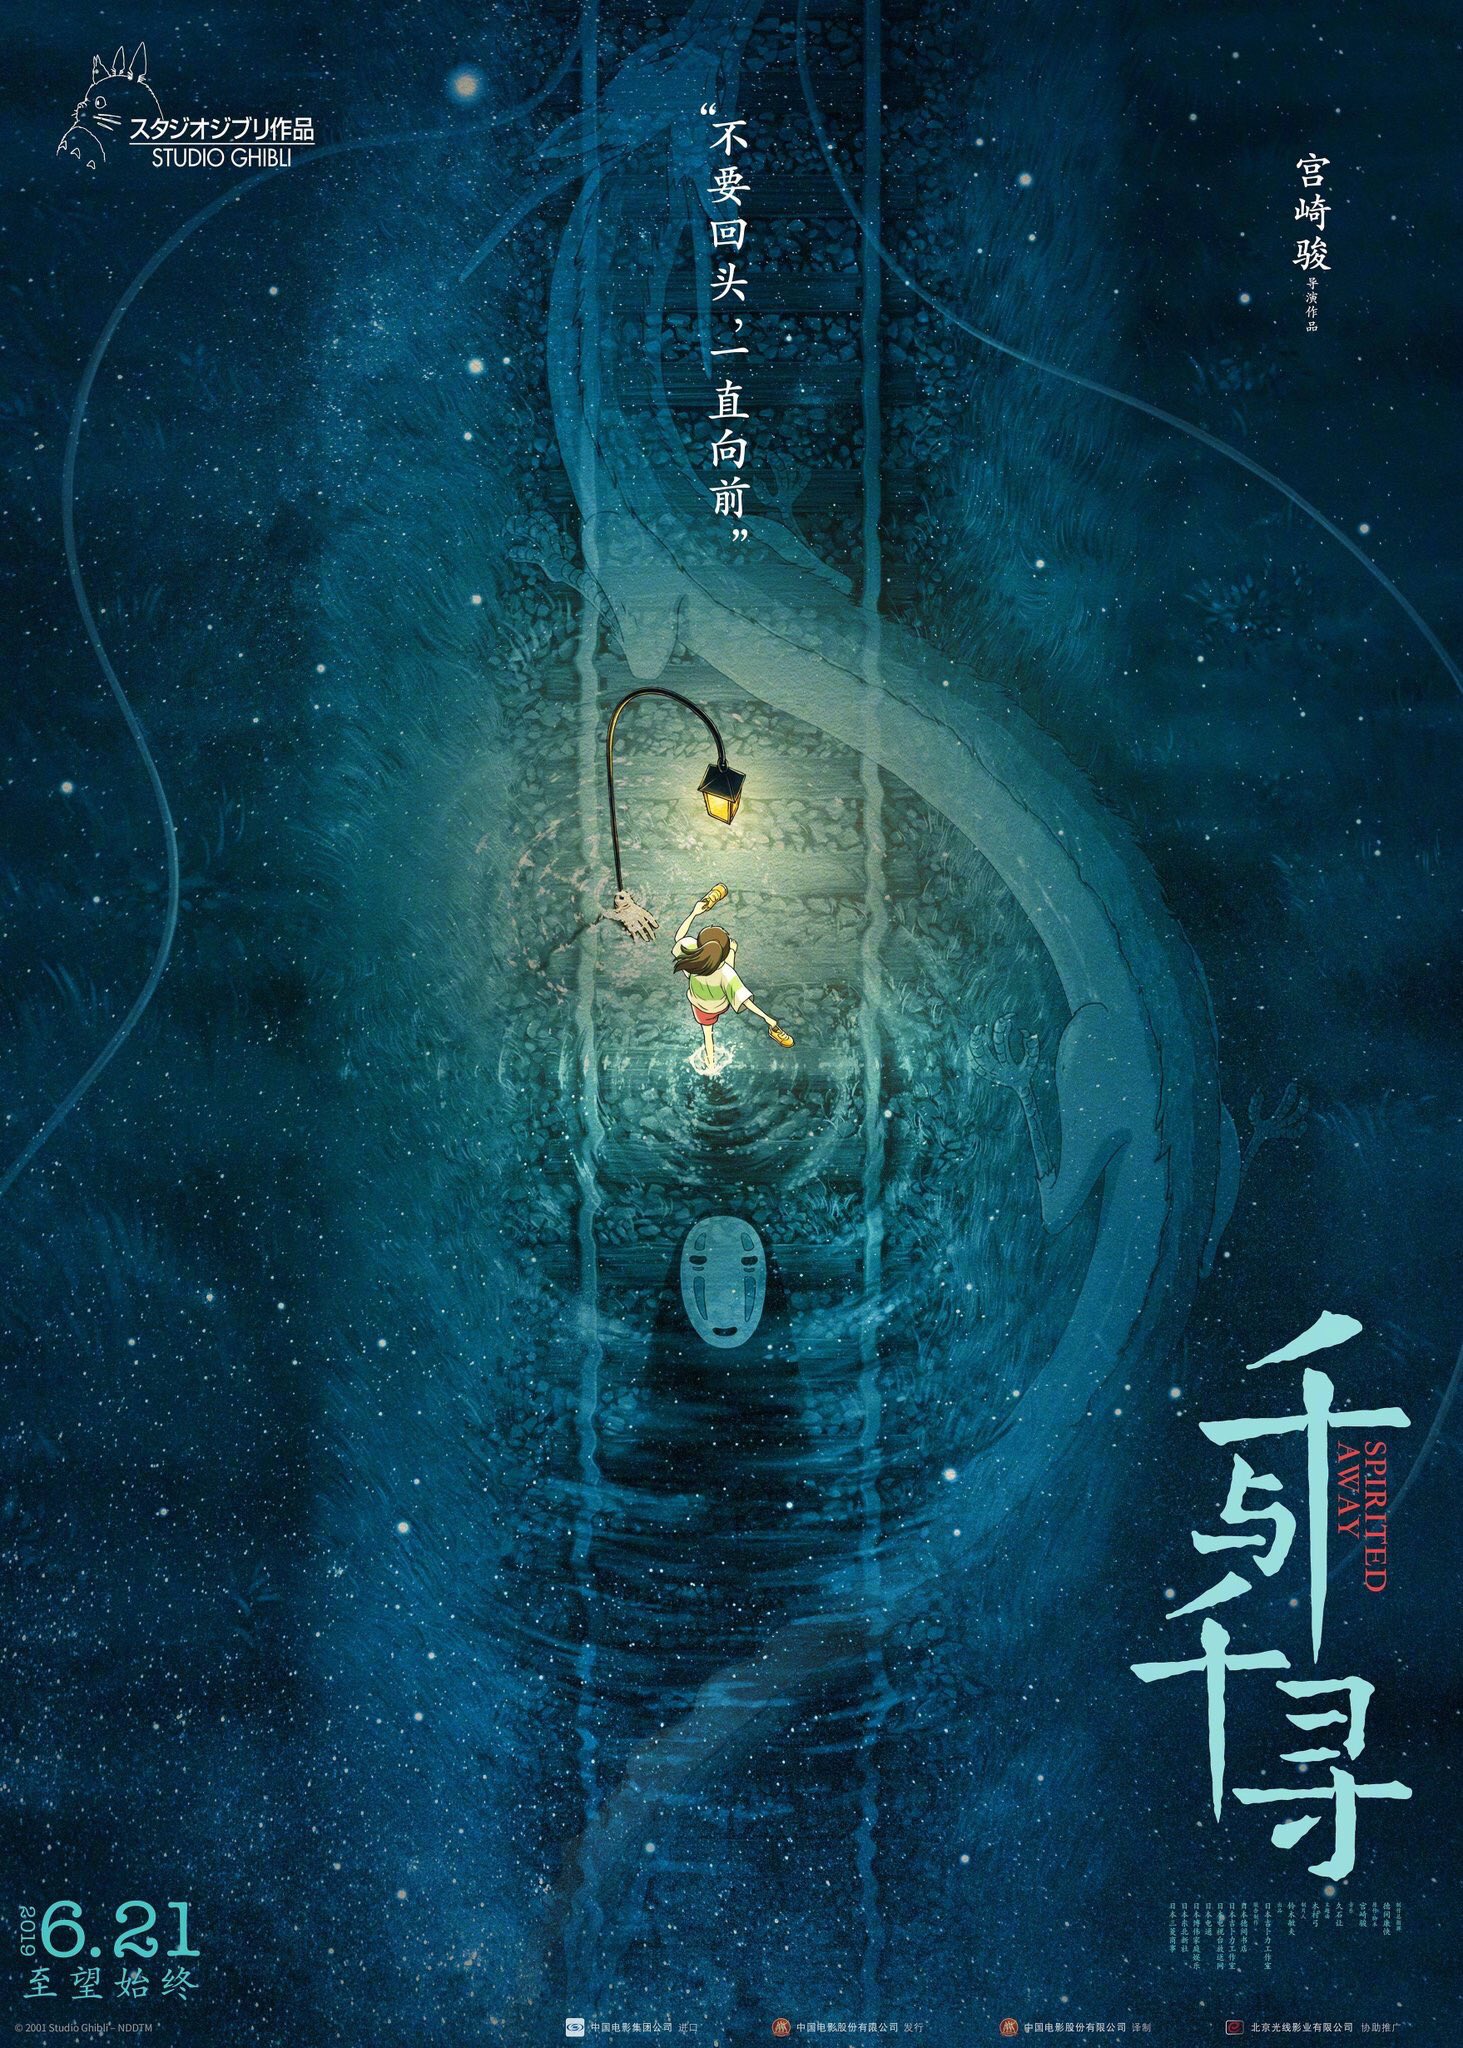 これはこれでアリ 中国版 千と千尋の神隠し のポスターが美しい 話題の画像プラス